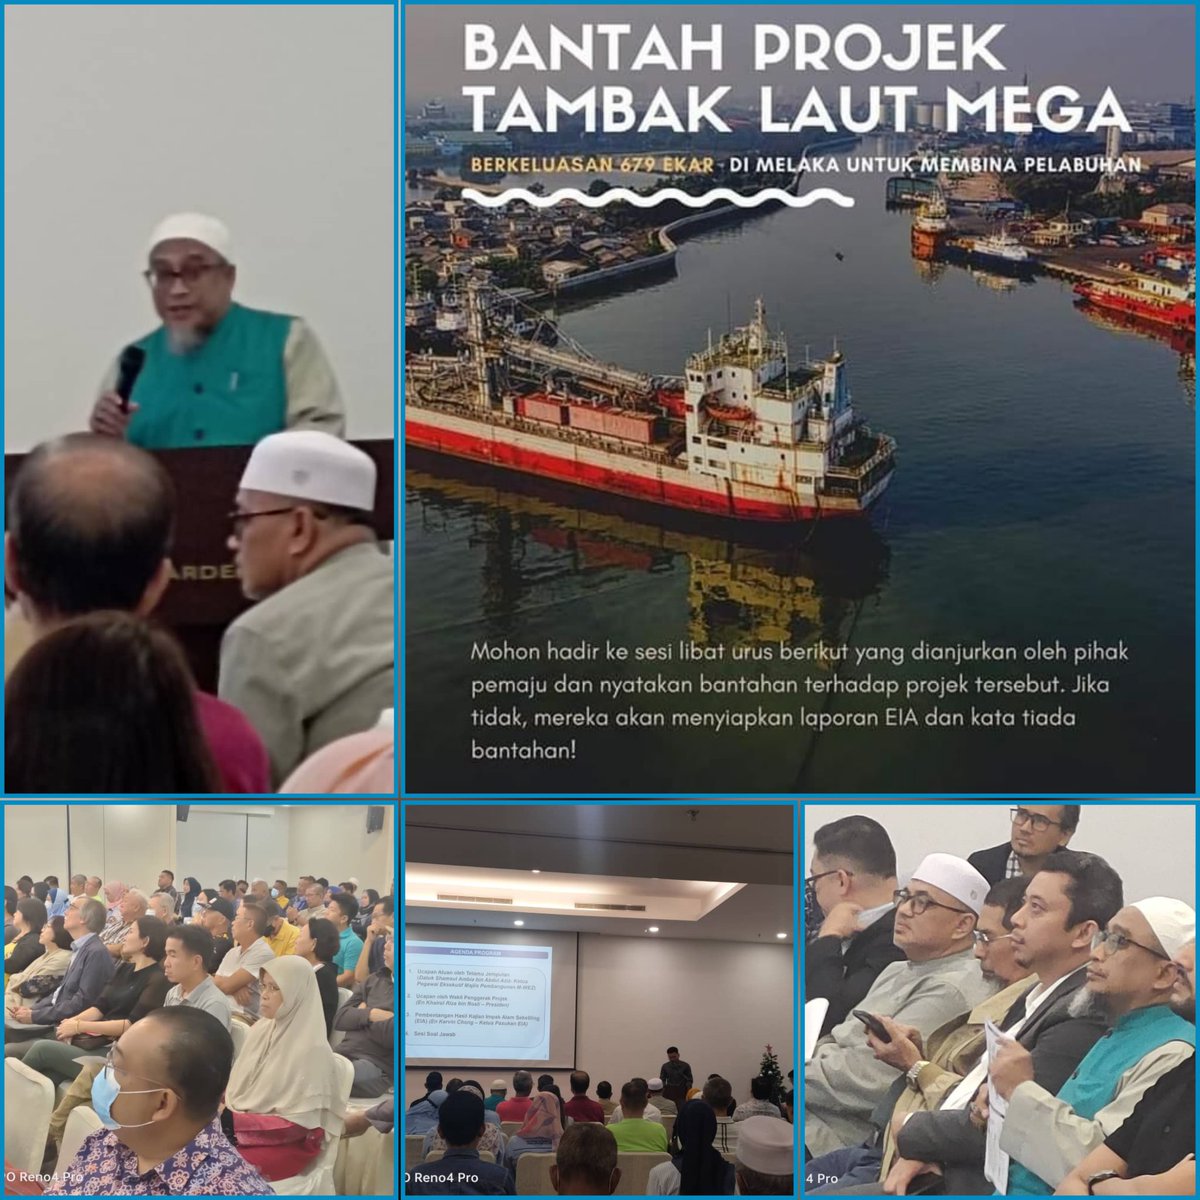 Kami dari PAS Melaka hadir bersama masyarakat yg membantah projek tambak laut mega. Turut hadir sama Pengerusi #PerikatanNasional Negeri Melaka, YB Dr Mohd Yadzil Yaakub. Sesi dialog ini diadakan oleh pihak pemaju utk memperbincangkan bantahan ini.

#TGZI 
#melaka